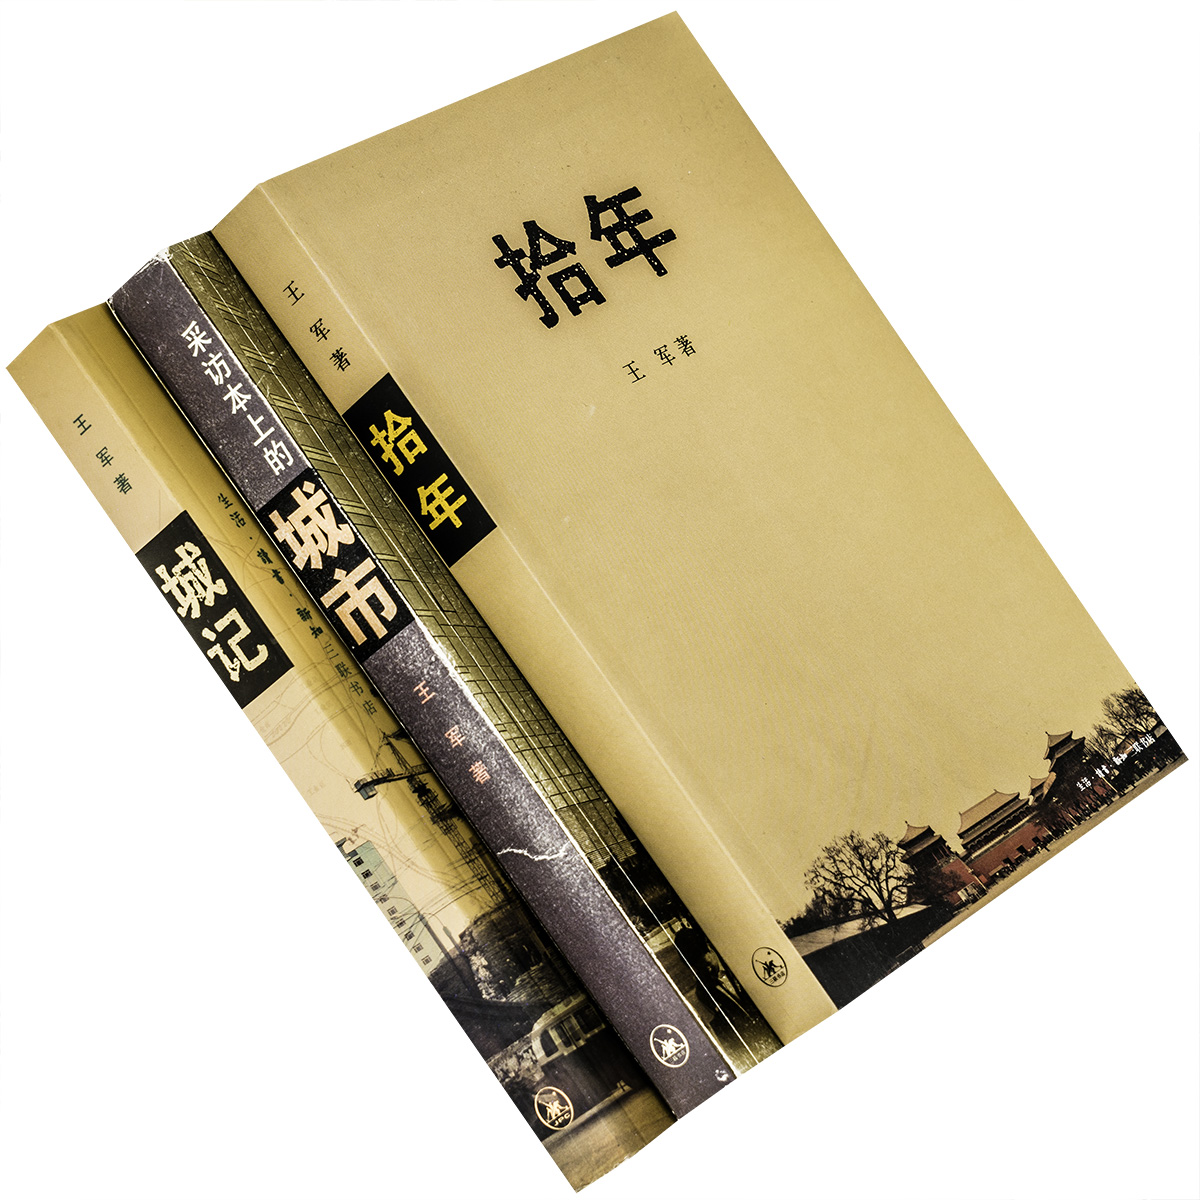 拾年+城记+采访本上的城市 全3册 王军 北京 城记 中国城市发展三部曲 三联书店 正版书籍 老版